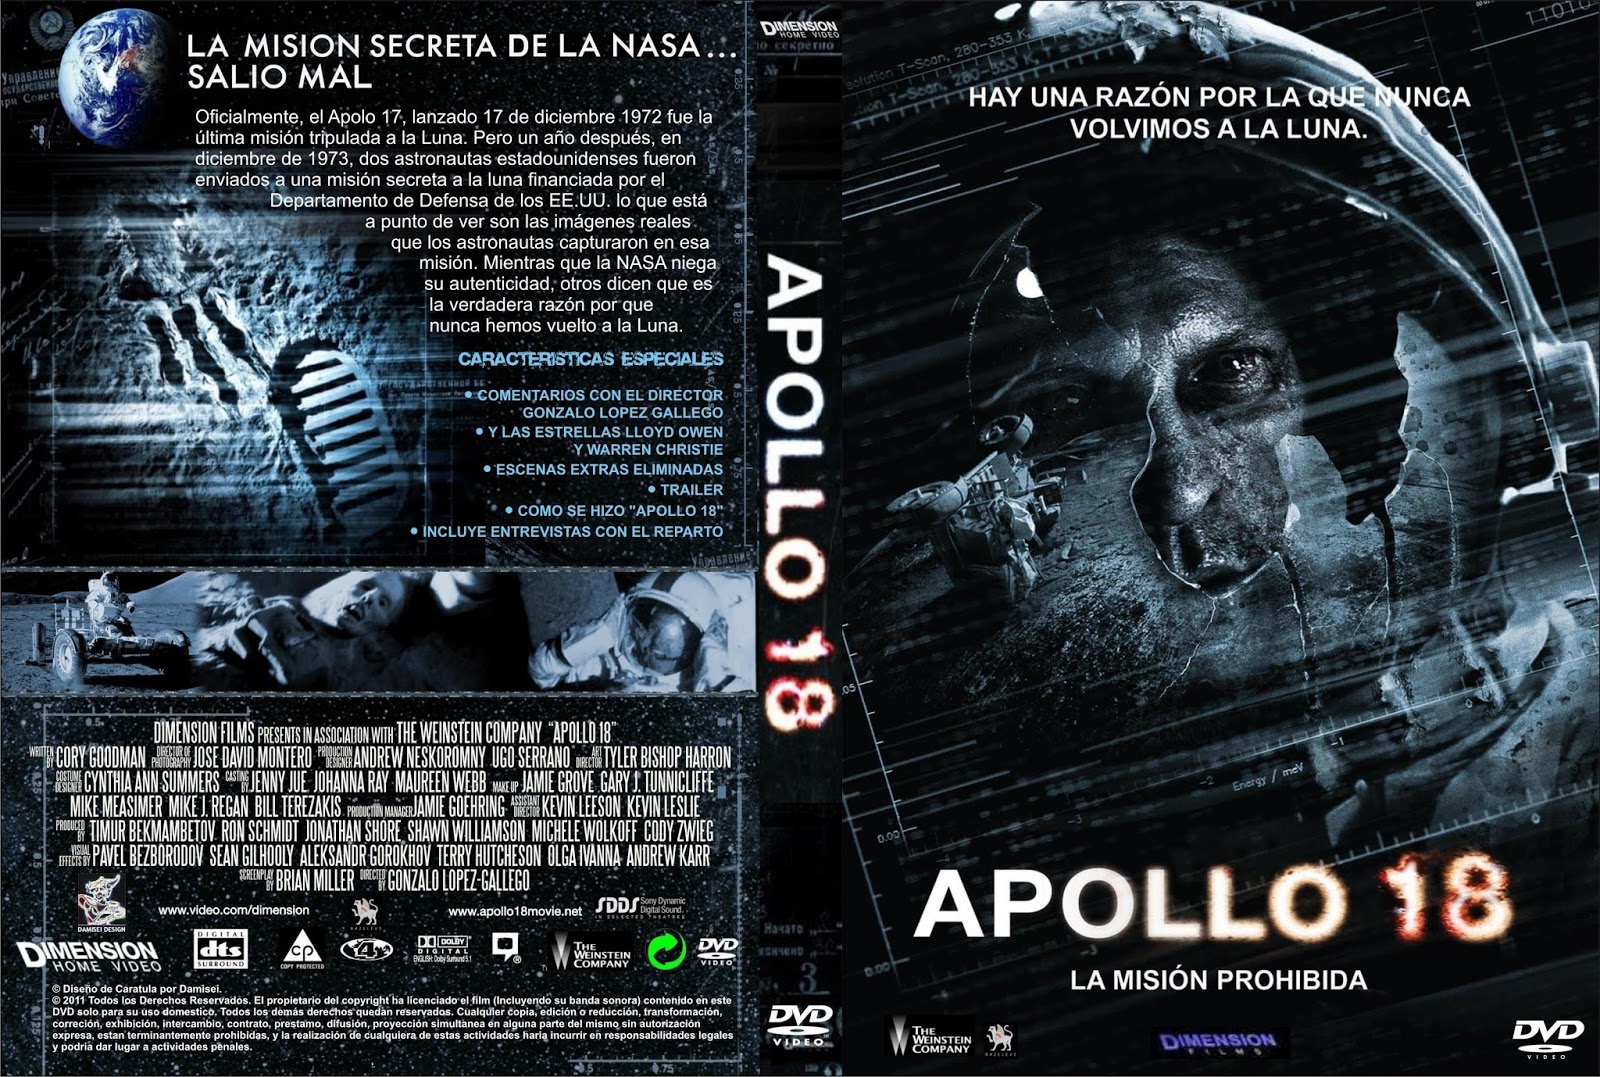 2011 Apollo 18